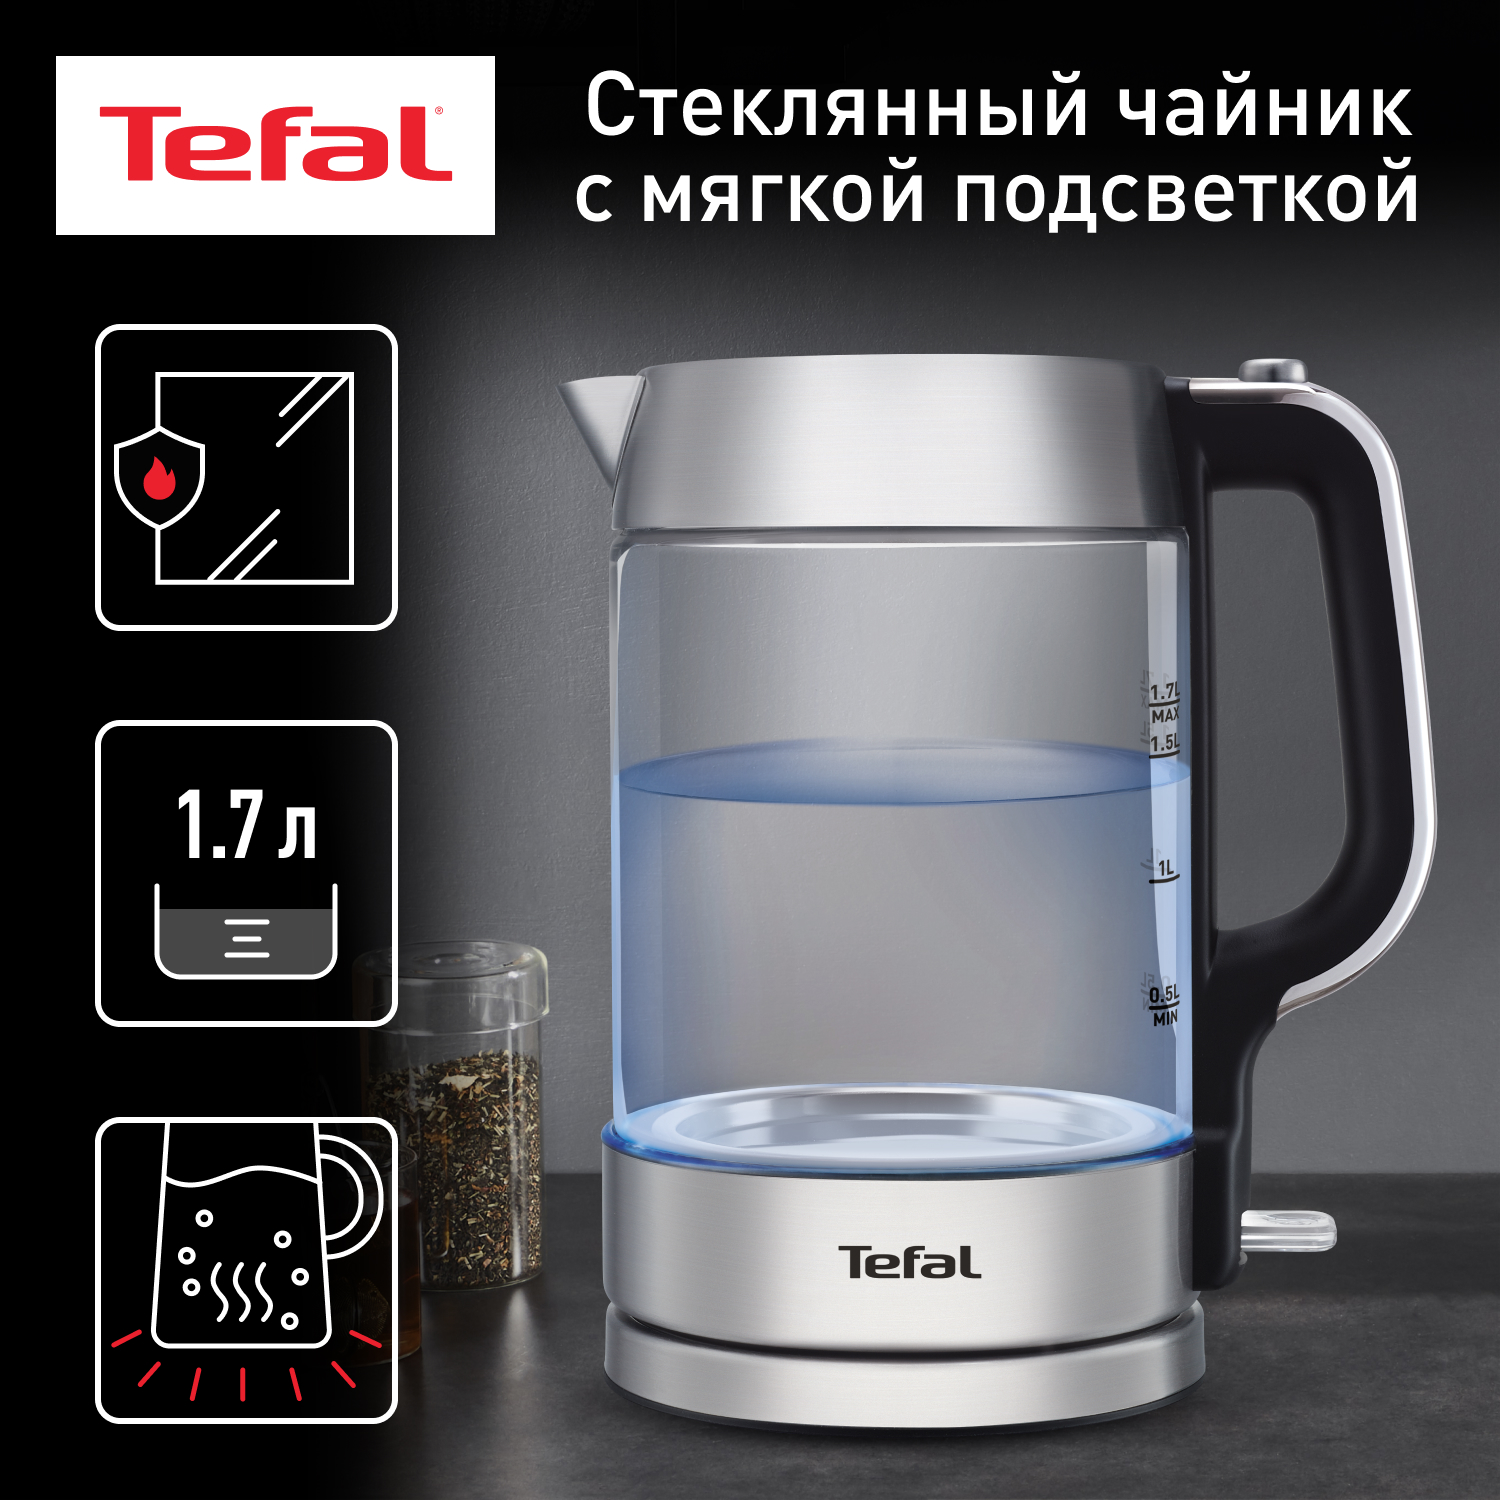 Чайник электрический Tefal KI770D30 1.7 л серебристый, черный чайник электрический tefal glass kettle ki770d30 1 7 л серебристый